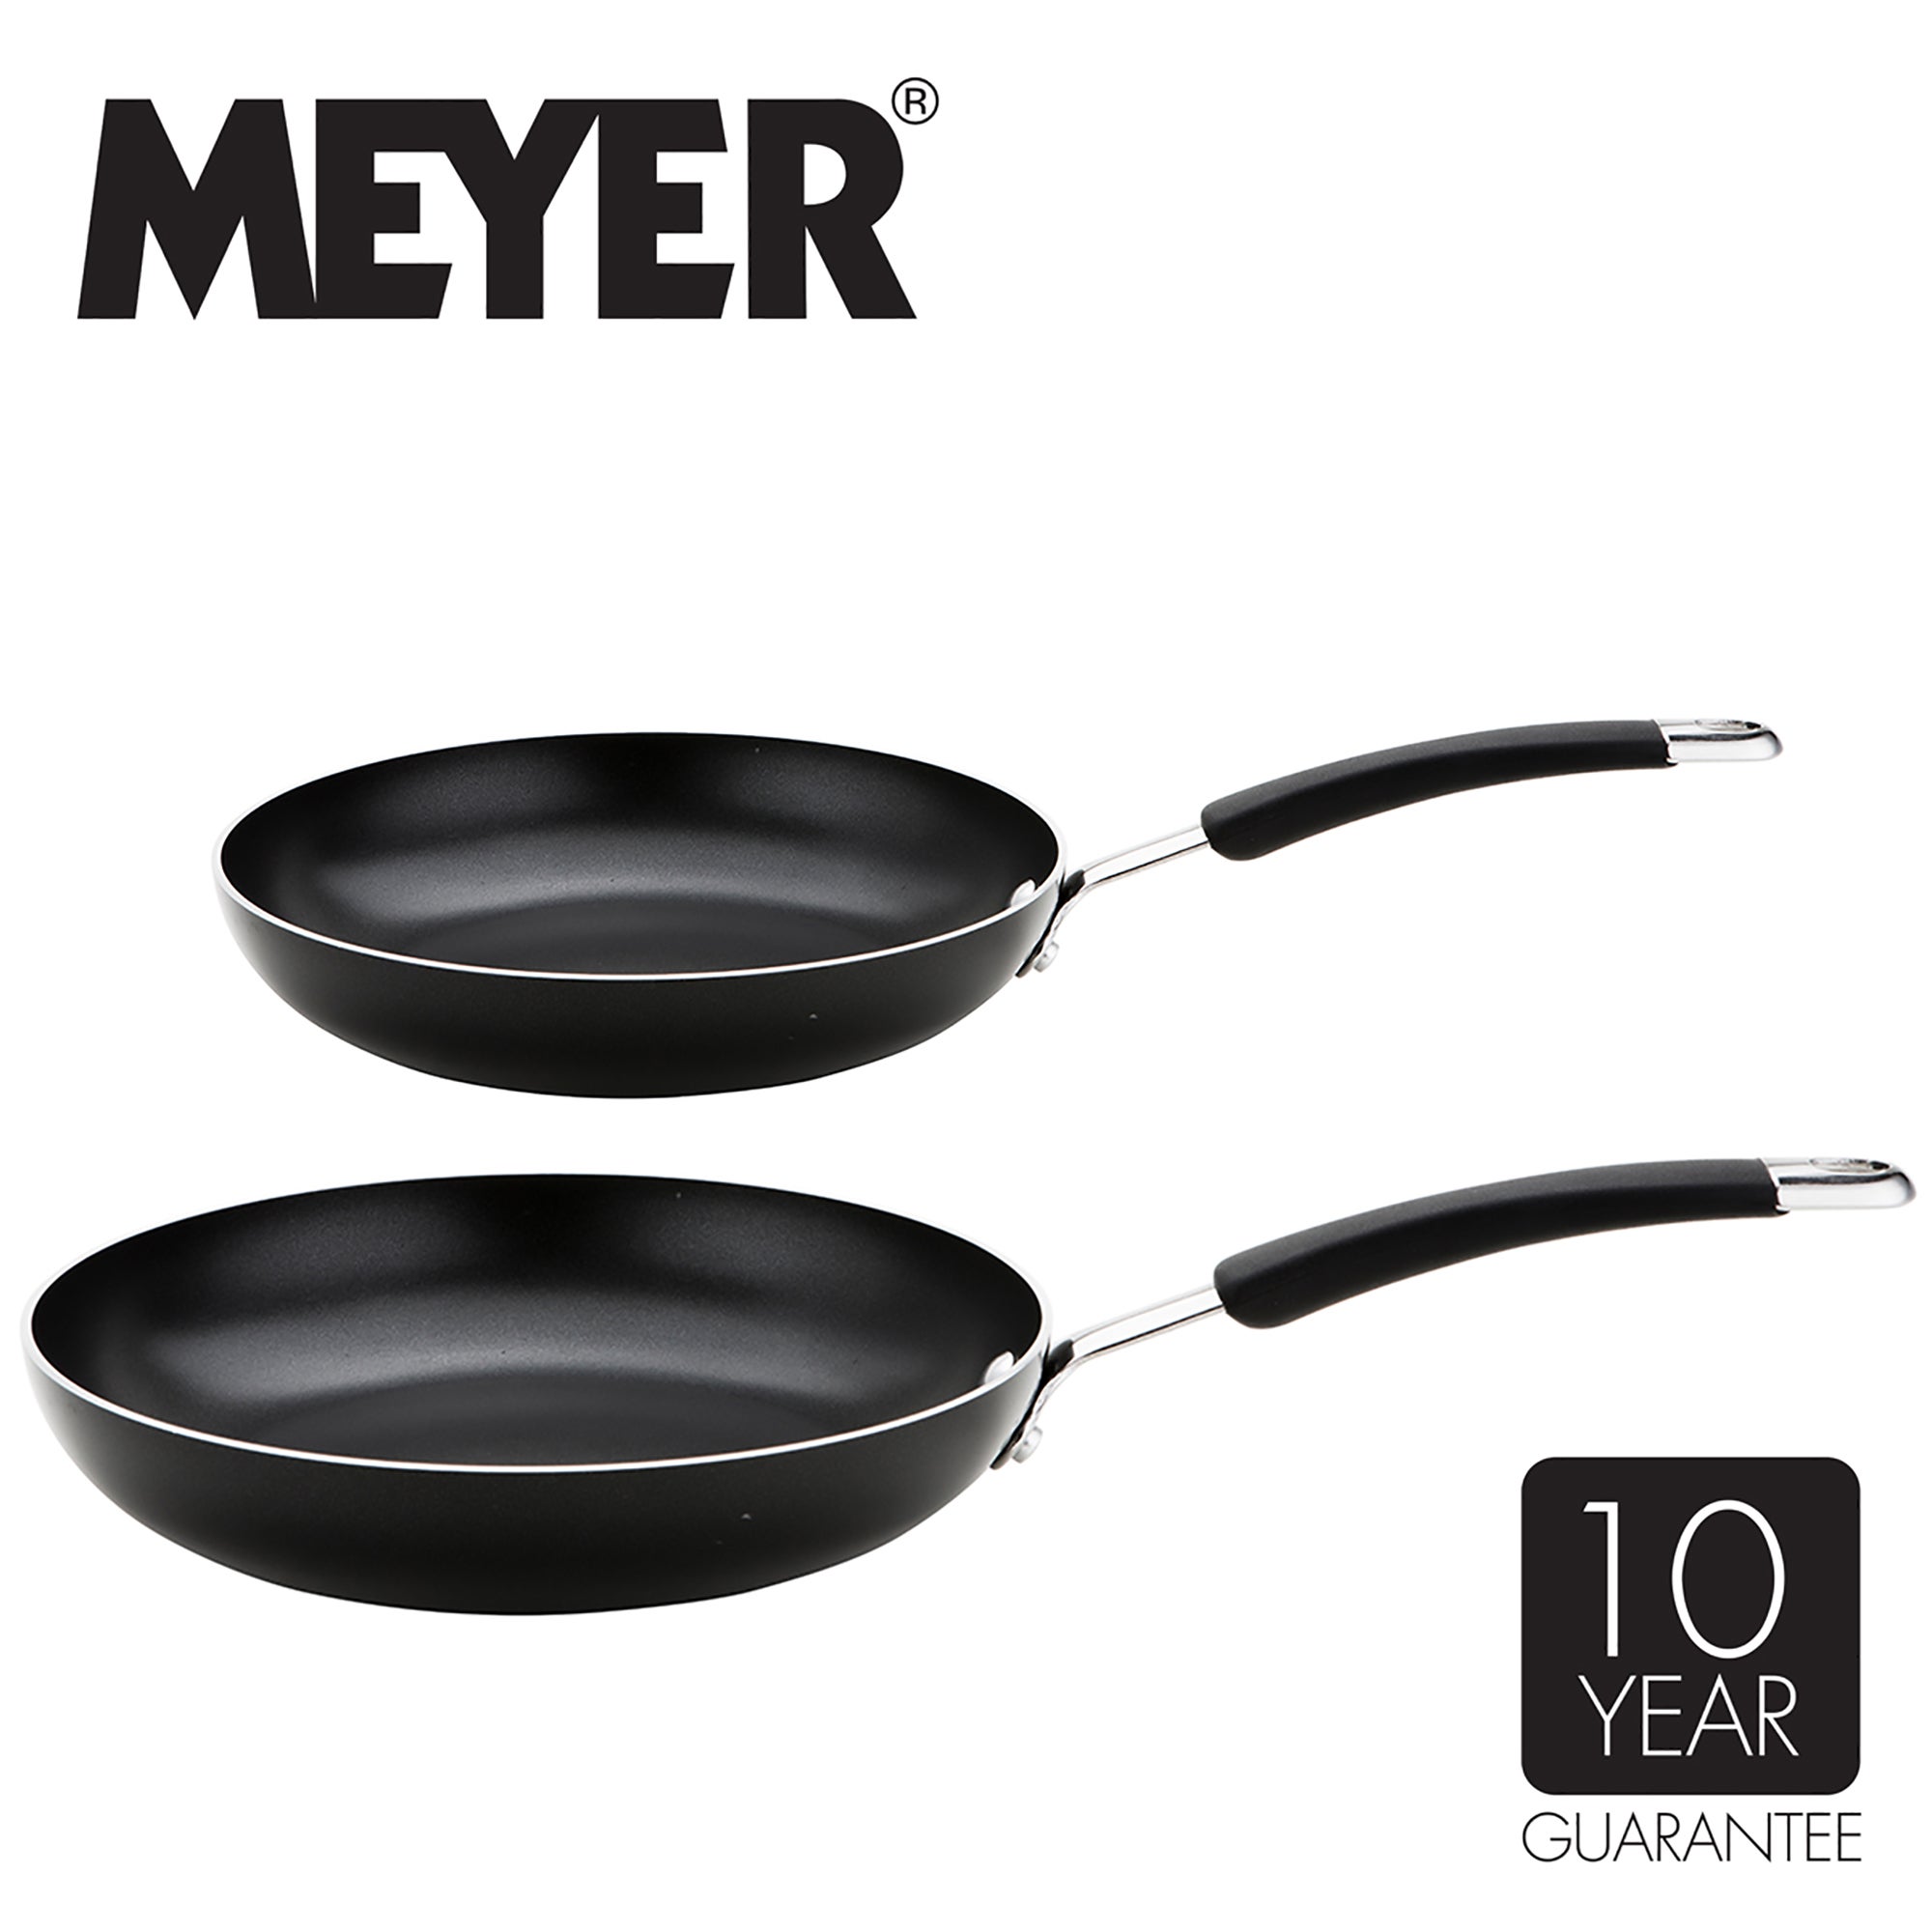 Meyer Non-Stick Induction Aluminium 2 Piece Frying Pan Set